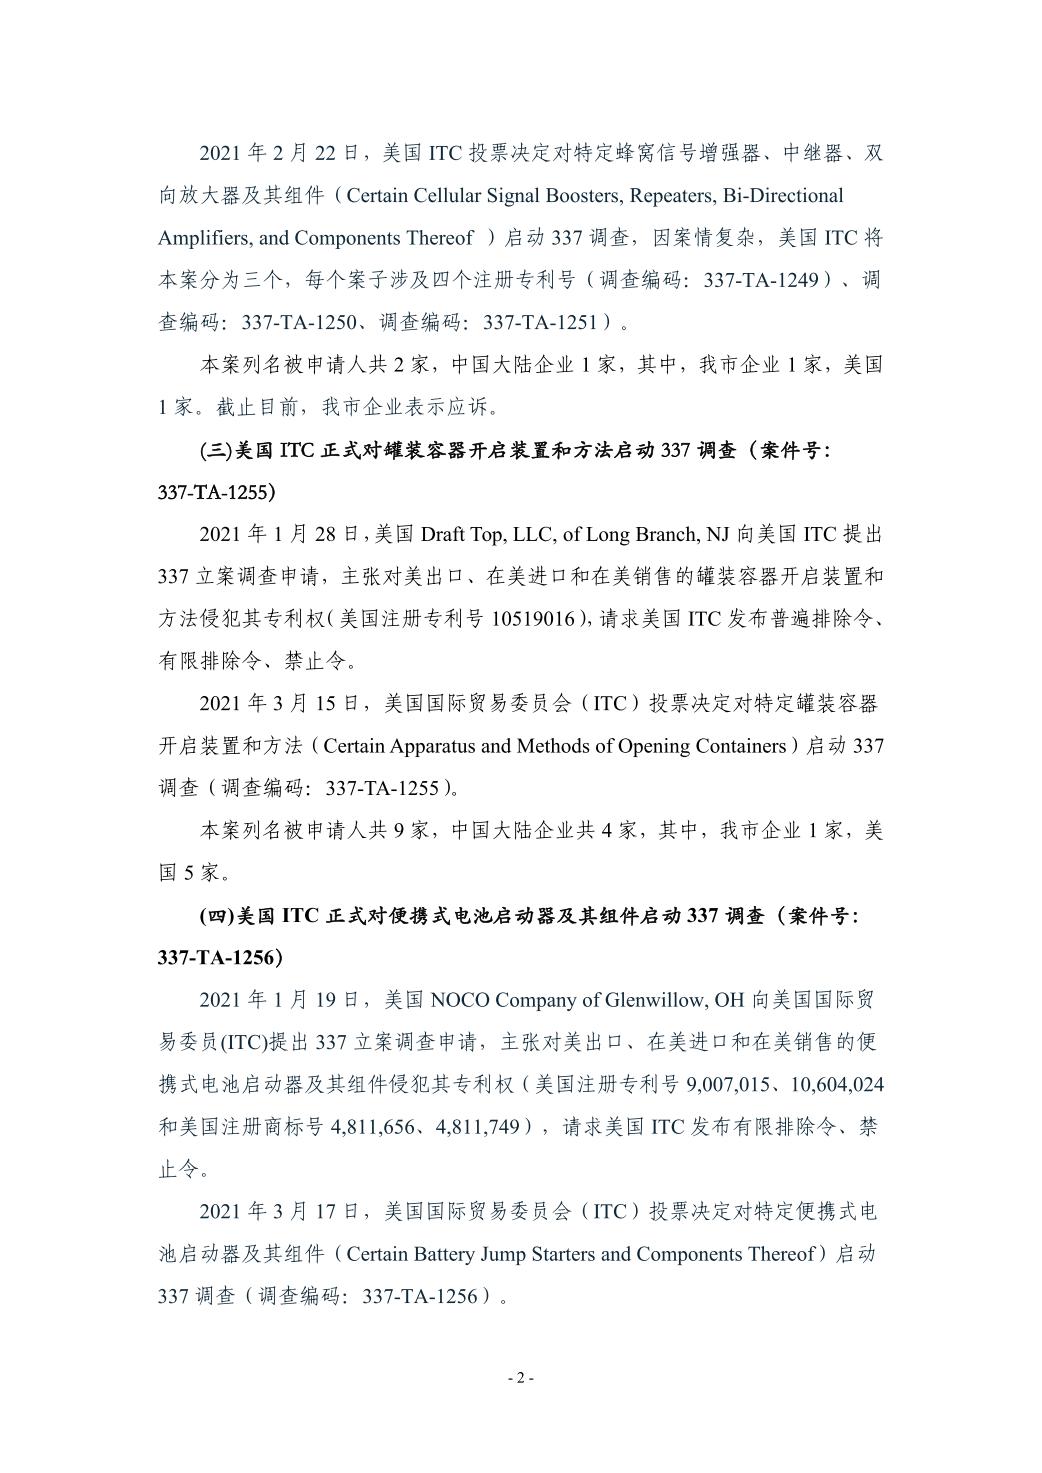 深圳市贸易摩擦案件情况及信息资讯（2021年1季度）(图2)